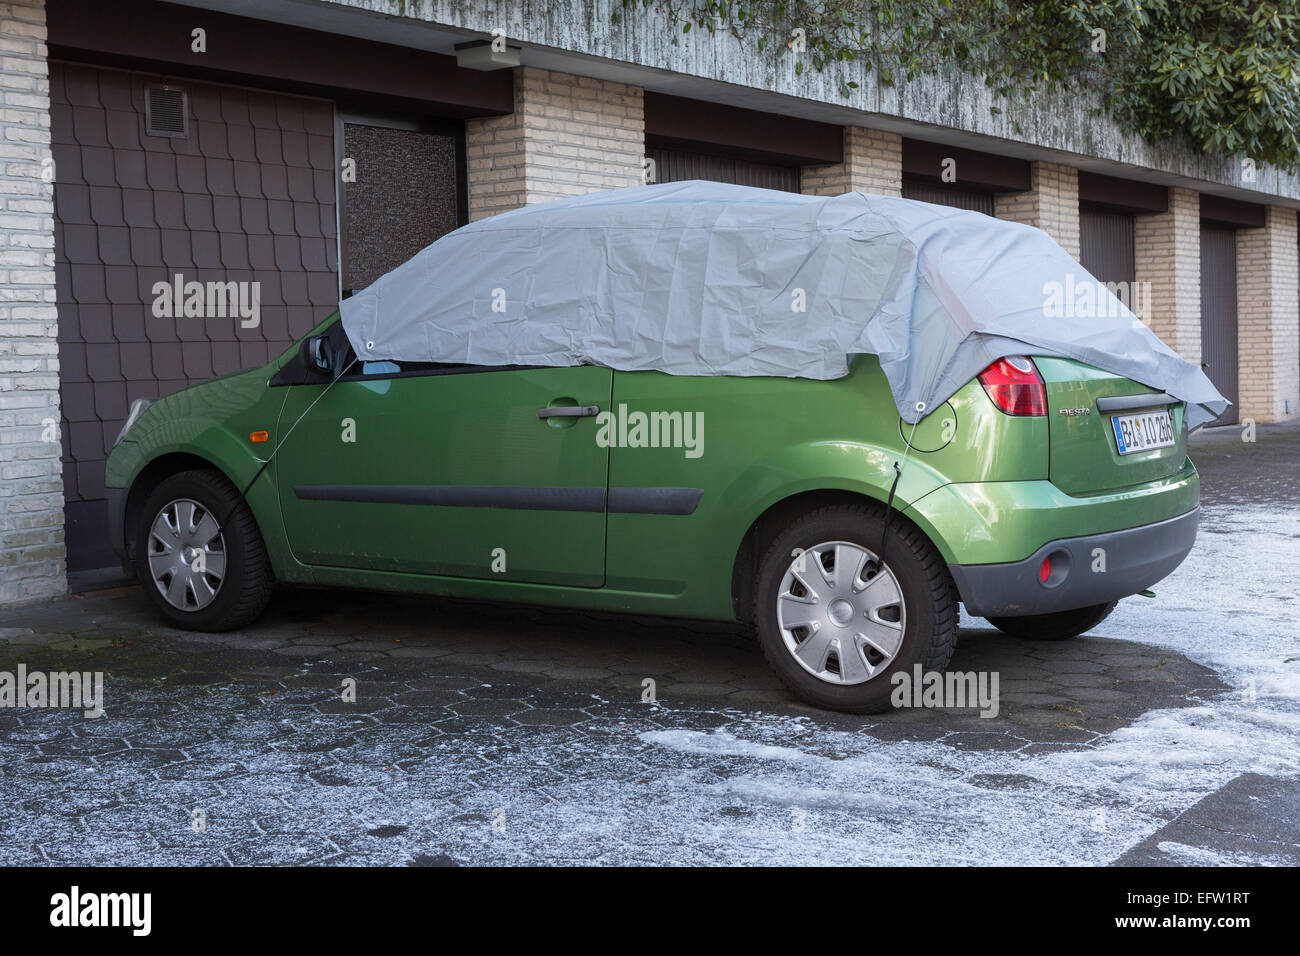 https://c8.alamy.com/compde/efw1rt/ein-geparktes-auto-hat-eine-abdeckung-uber-der-windschutzscheibe-und-anderen-fenstern-vor-frost-schutzen-efw1rt.jpg